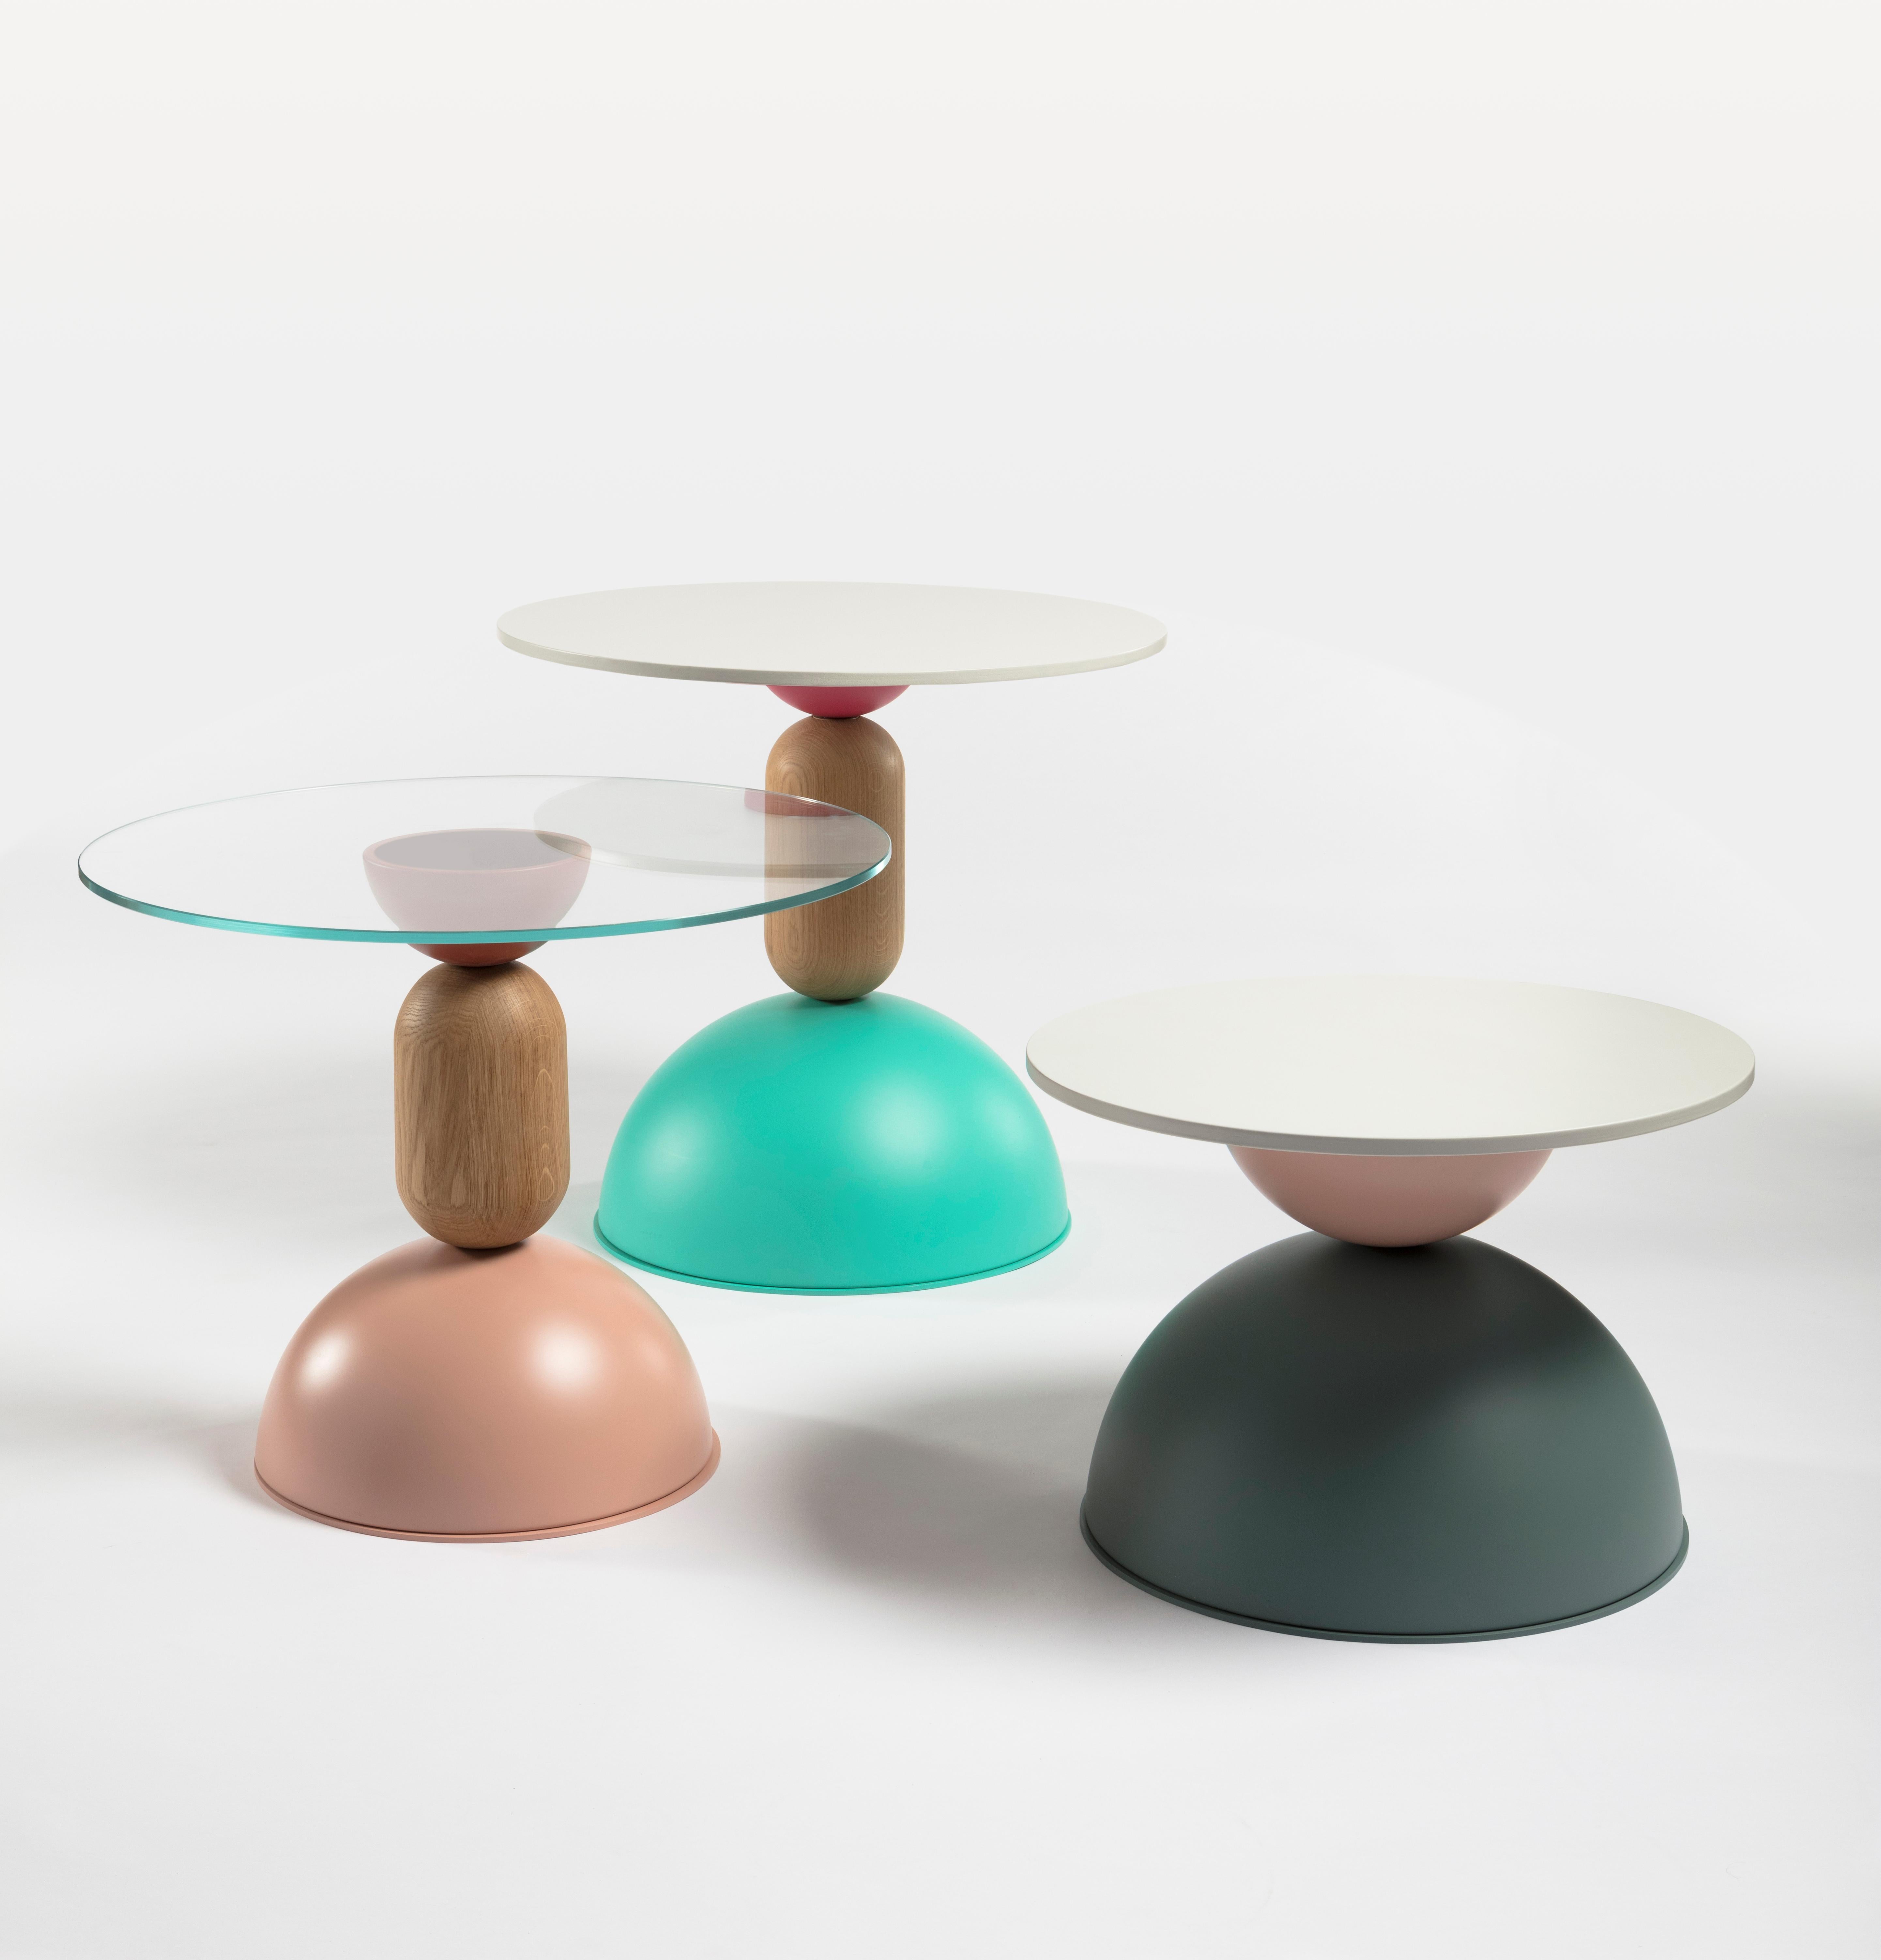 Eine Kollektion von kleinen Tischen in verschiedenen Größen und Höhen, bestehend aus einem vielseitigen
Überlagerung von gebogenen Formen aus Holz und farbigem Metall. Wie Tanzen
Figuren, die gleichzeitig spielerisch und funktional sind und die